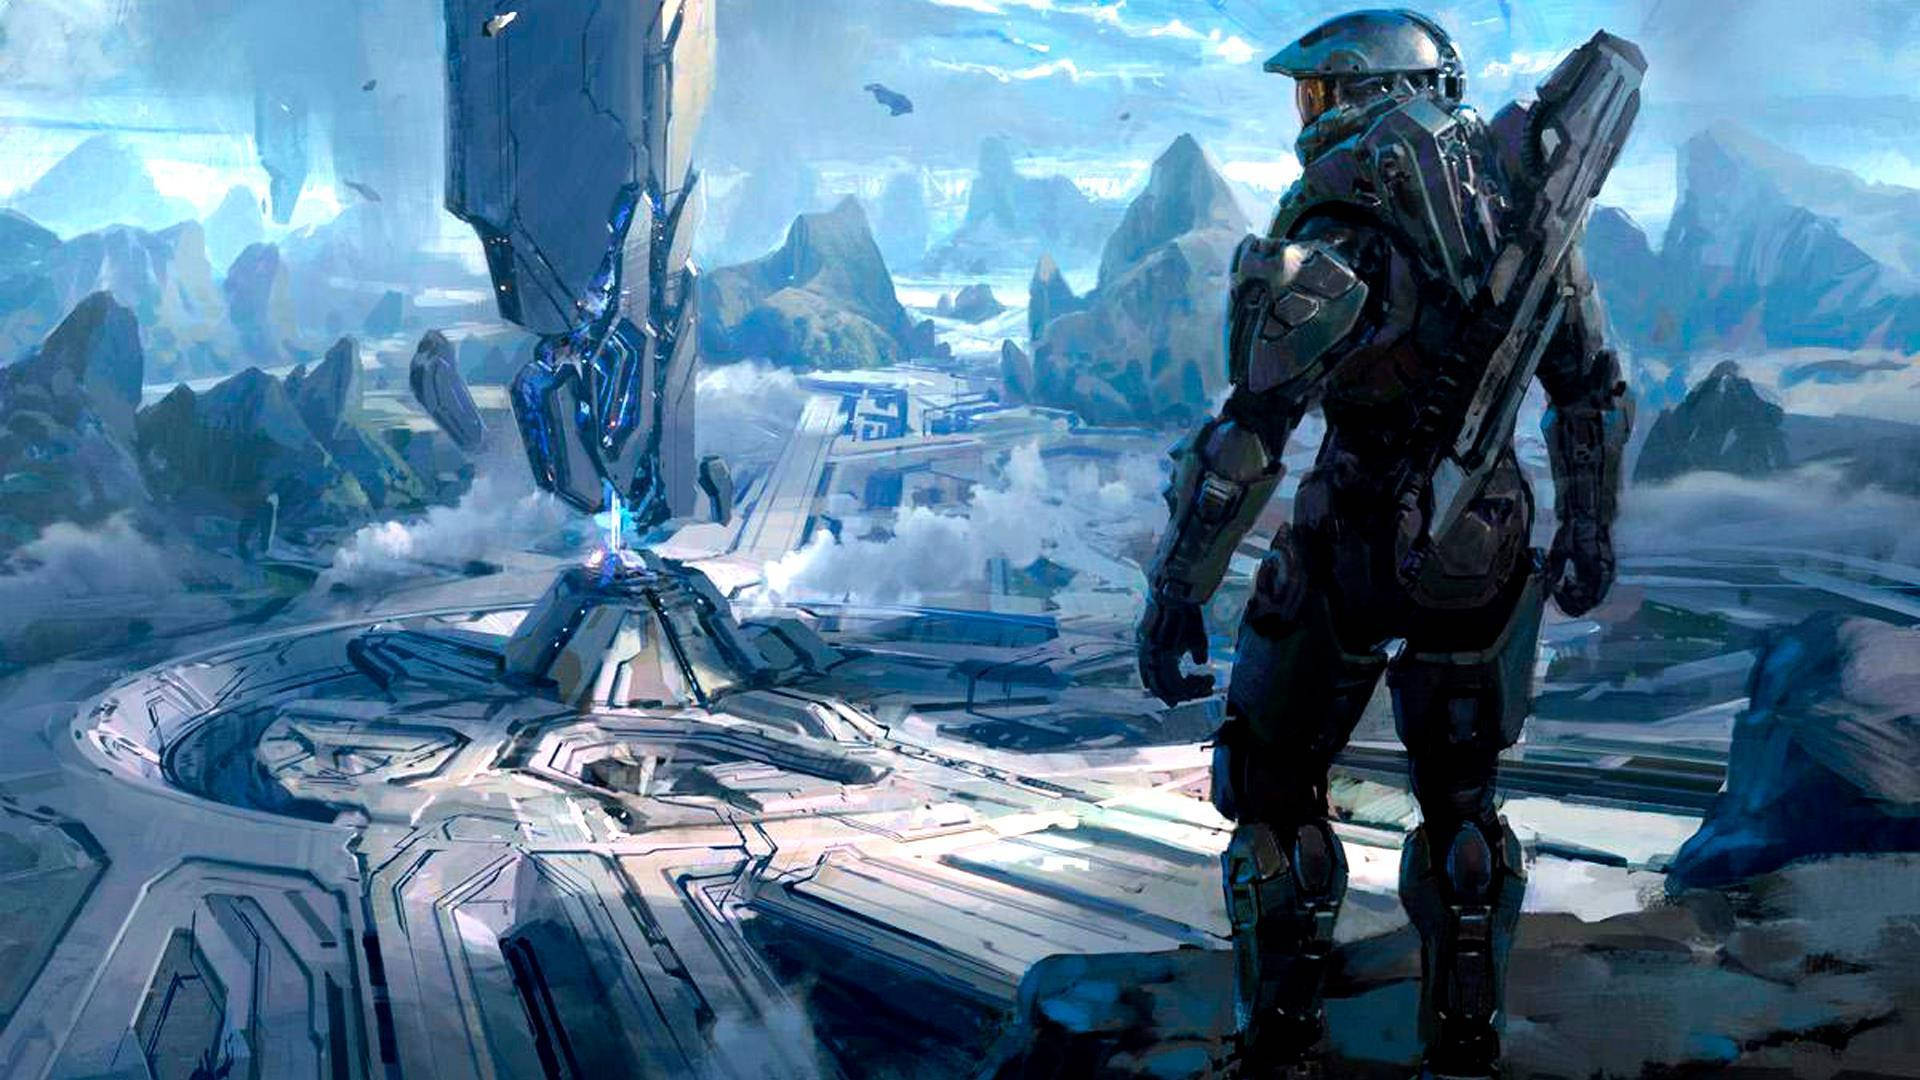 Halo 4 Futuristic City Wallpaper